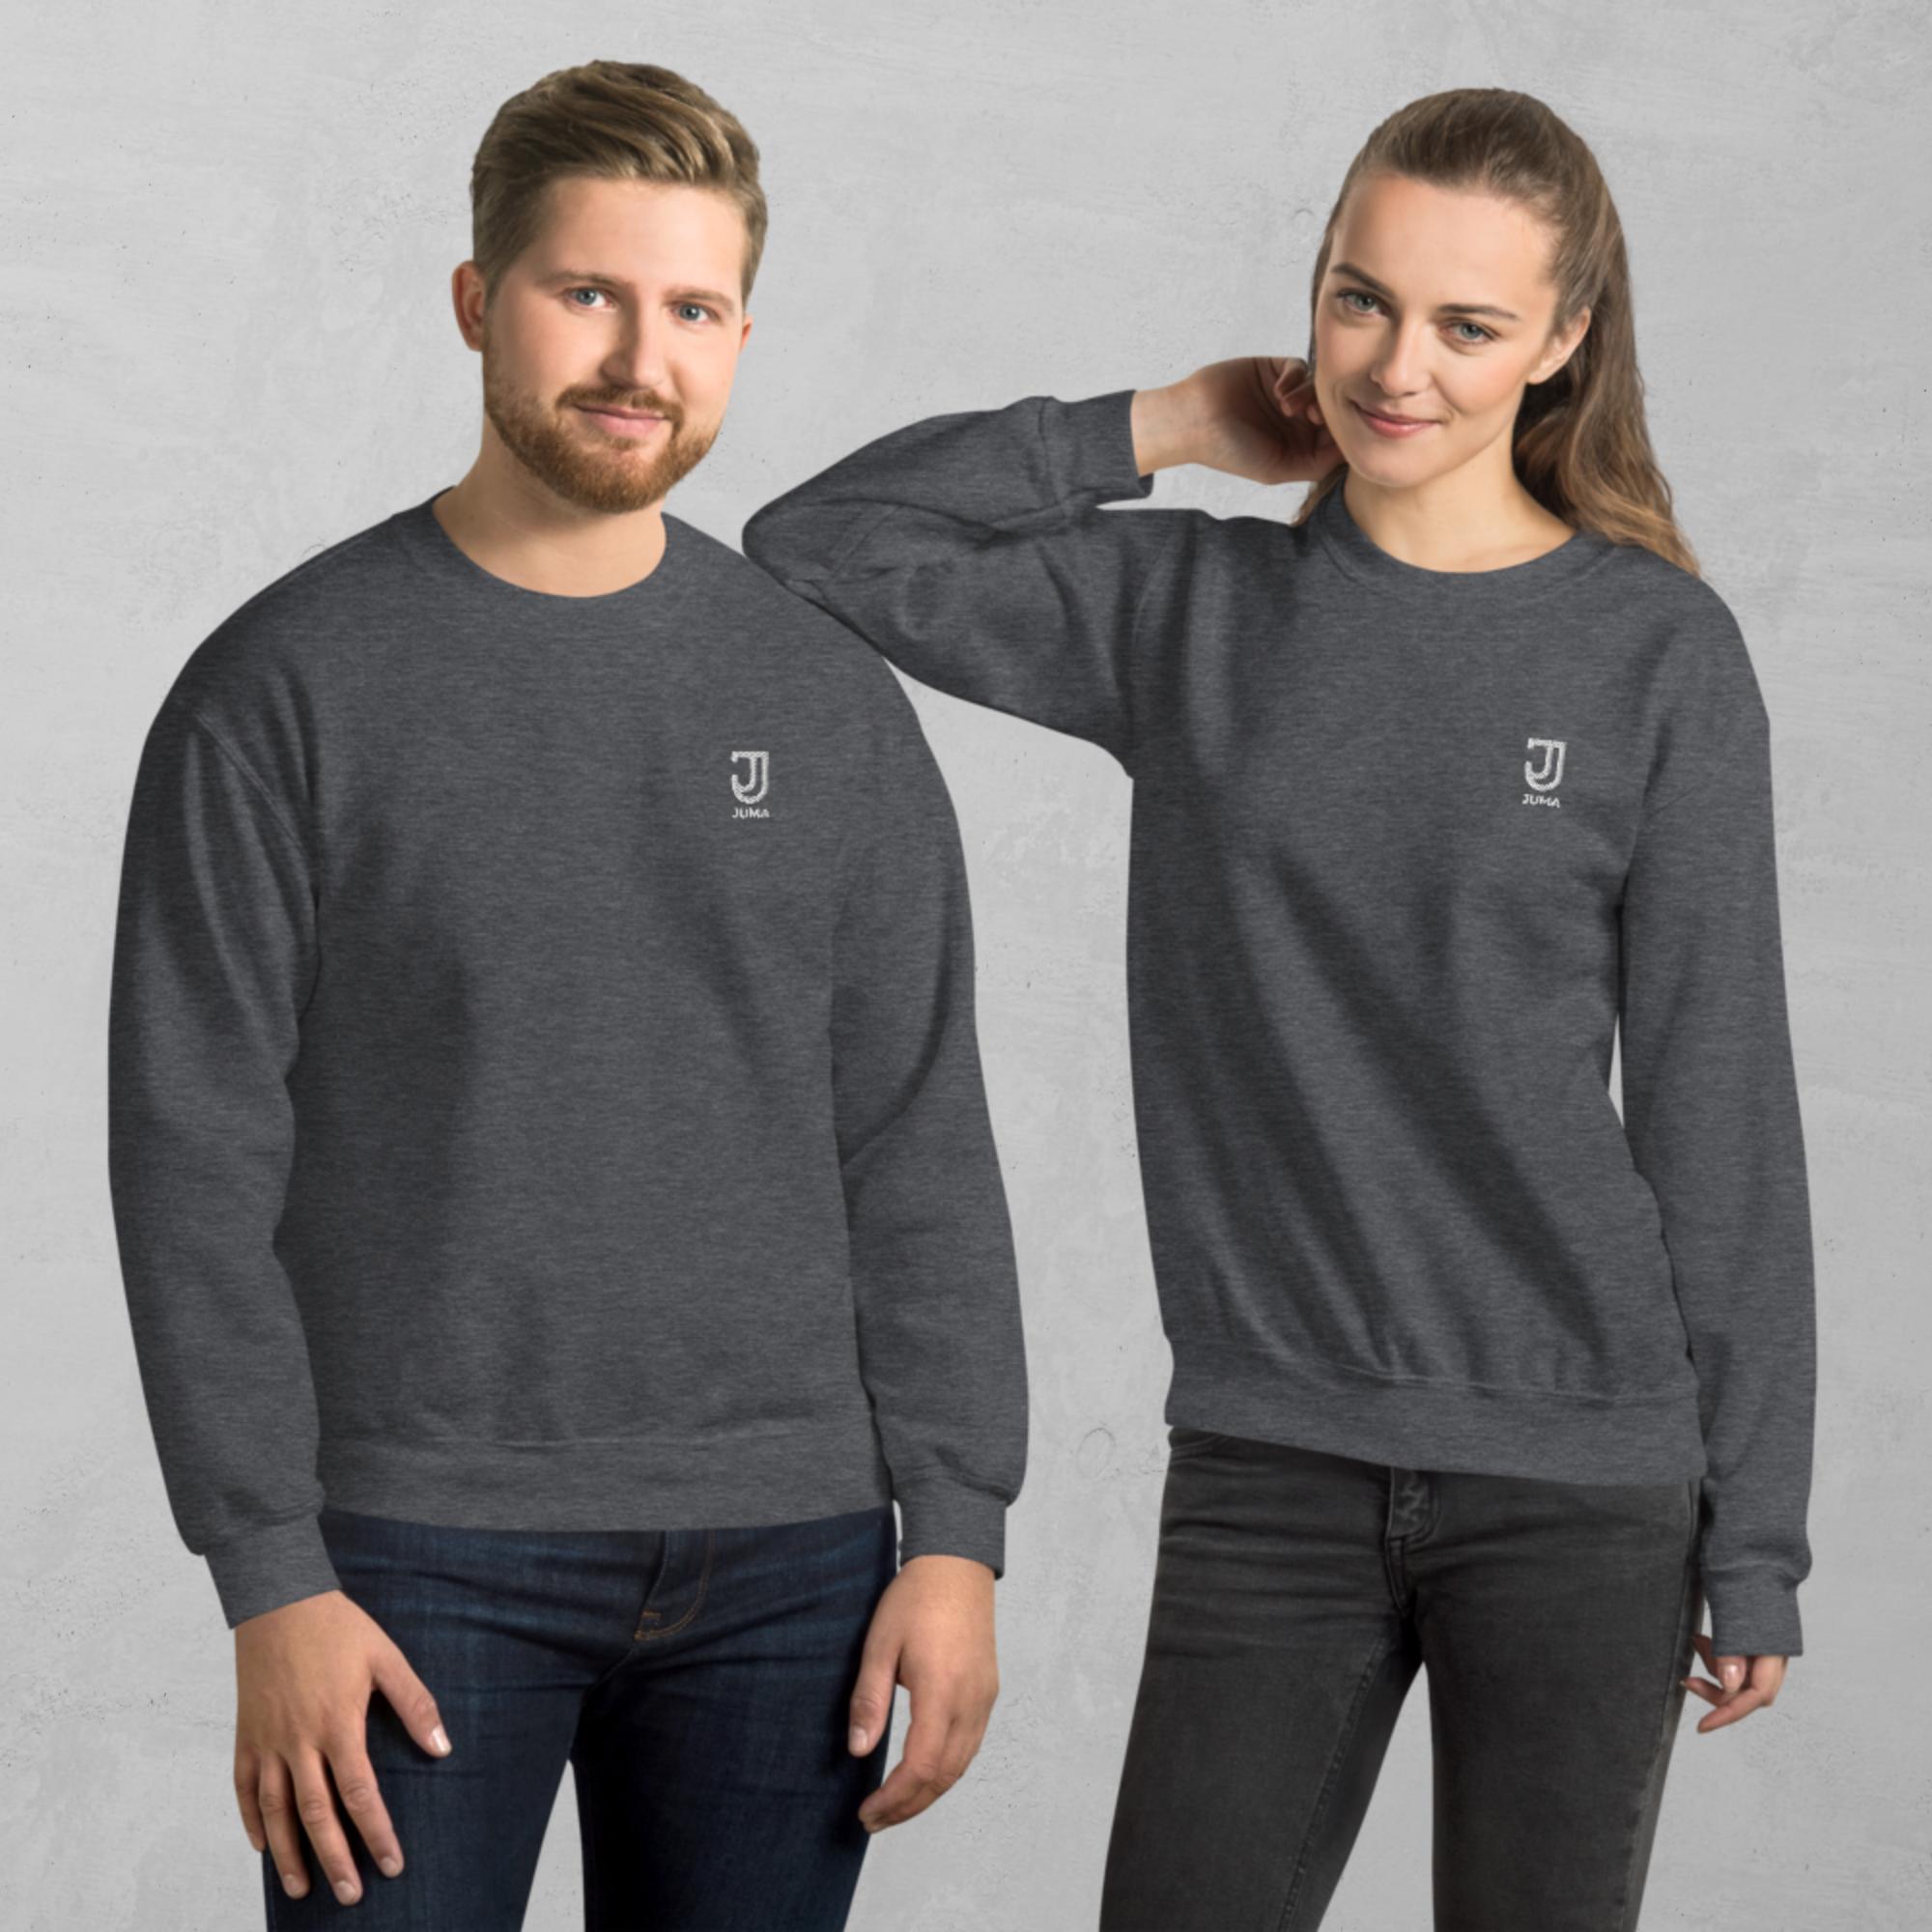 unisex-crew-neck-sweatshirt-dark-heather-front-63884a497e054.jpg